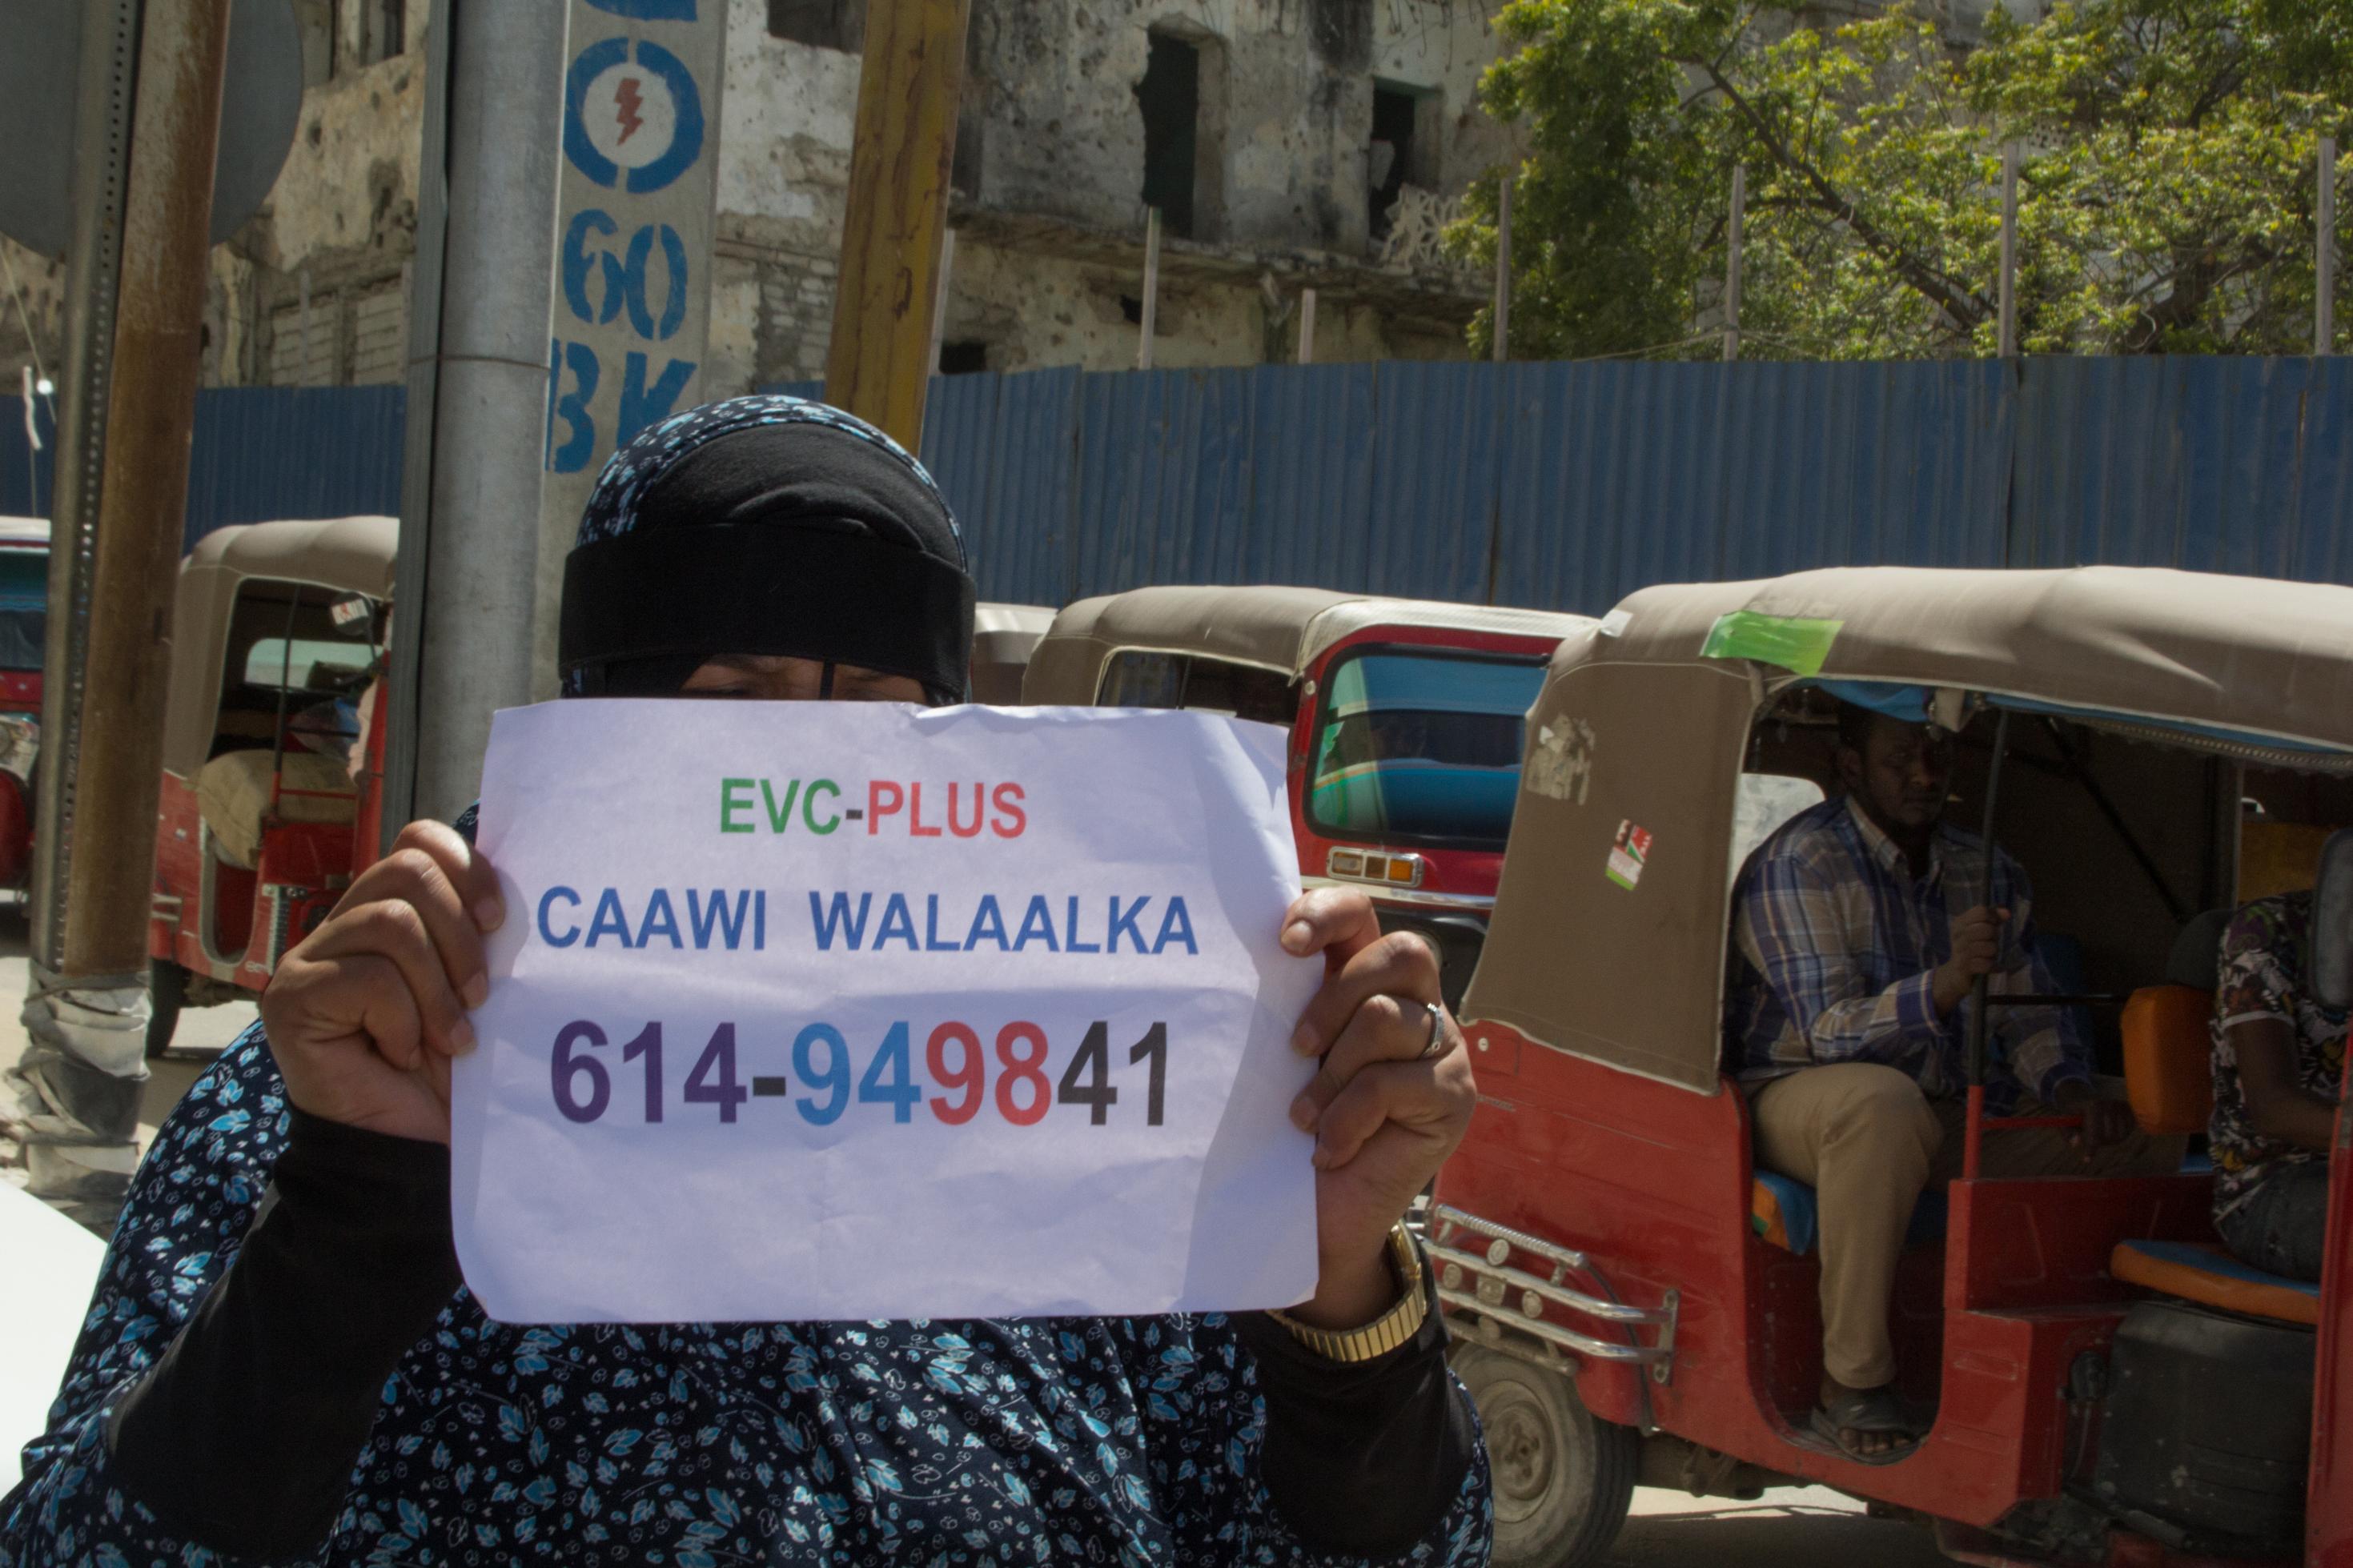 Ein Frau bettelt um e-money in Somalia 2021. Sie hält einen Zettel in der Hand mit ihrer Handynummer. Auf dem Papier steht: EVC-PLUS, CAAWI WALAALKA und eine Nummer.